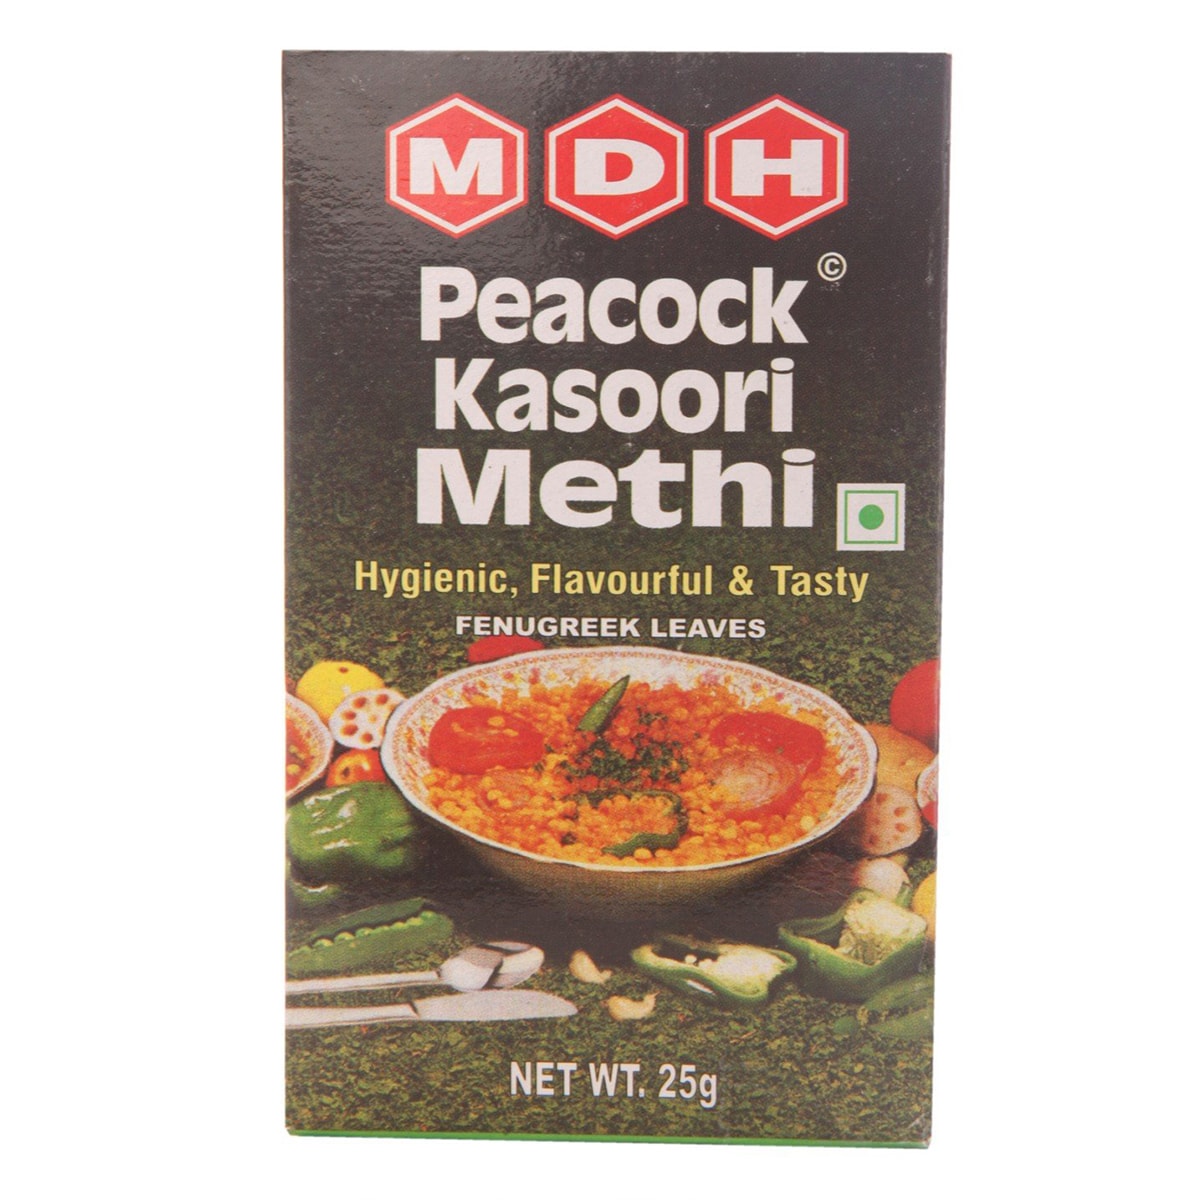 Buy MDH Peacock Kasoori Methi (Fenugreek Leaves) - 25 gm